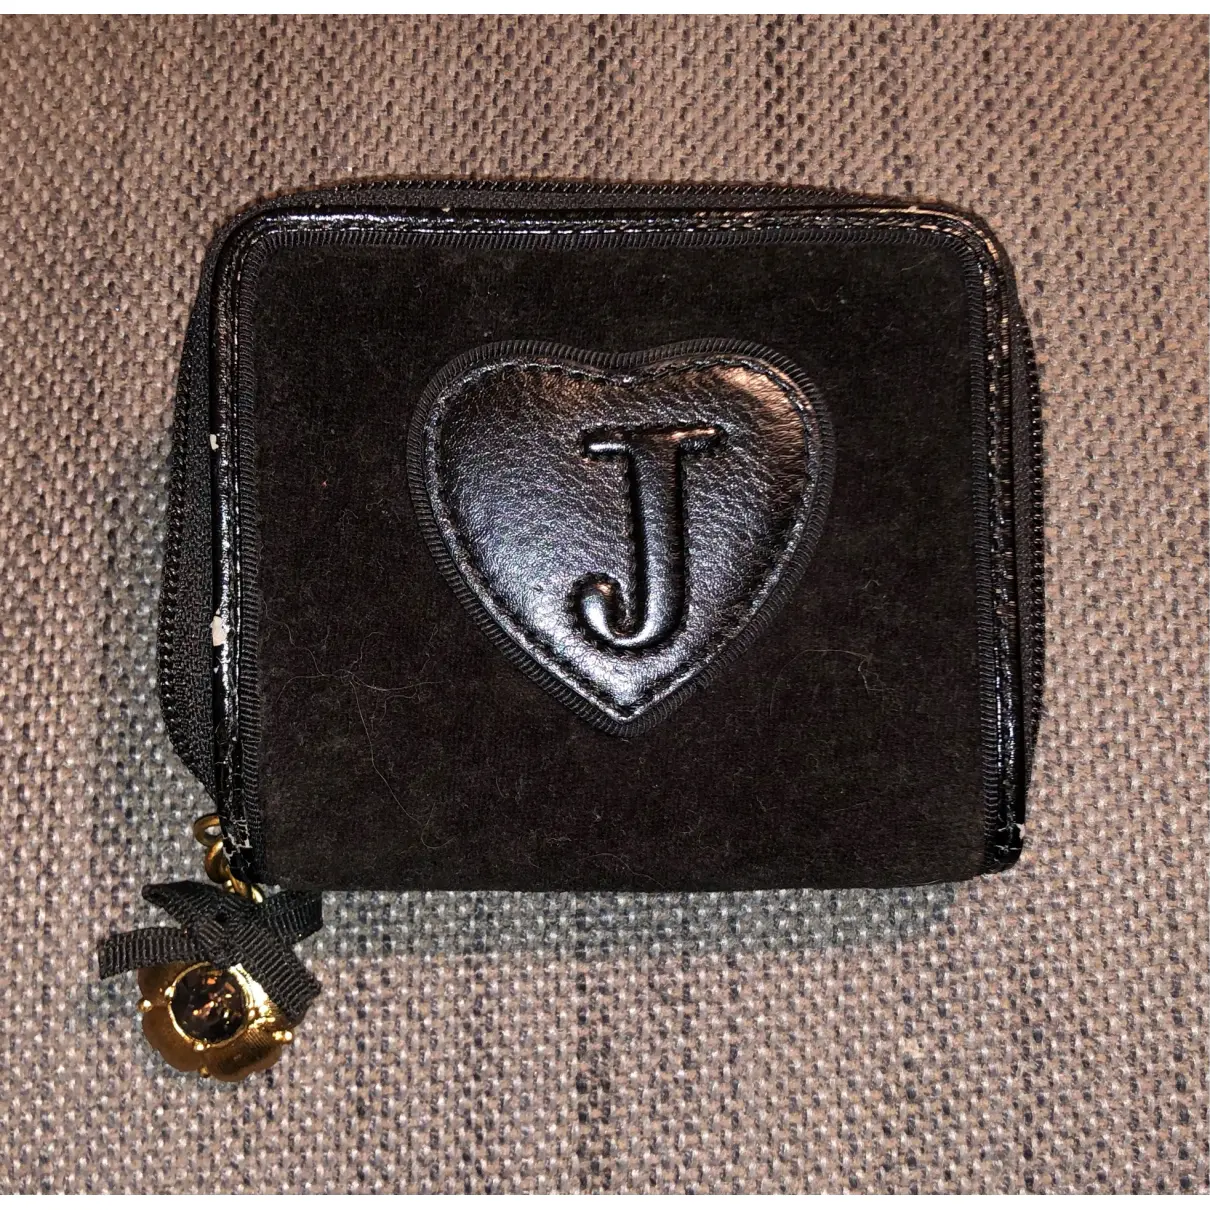 Buy Juicy Couture Velvet wallet online